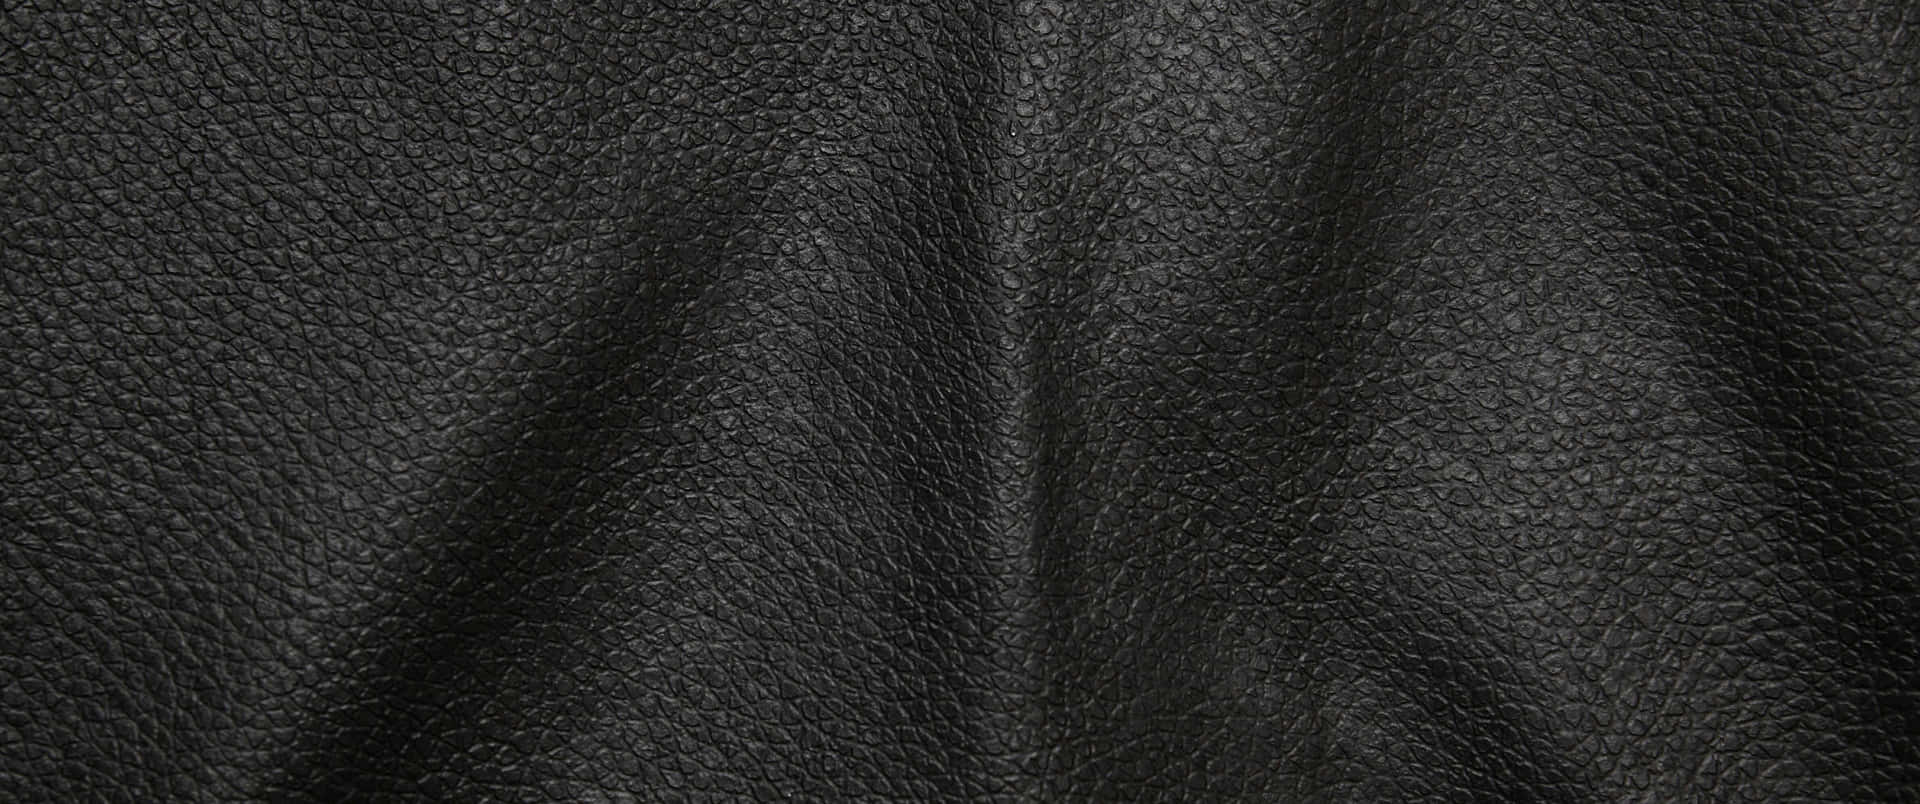 Læder Texture 3440 X 1440 Wallpaper